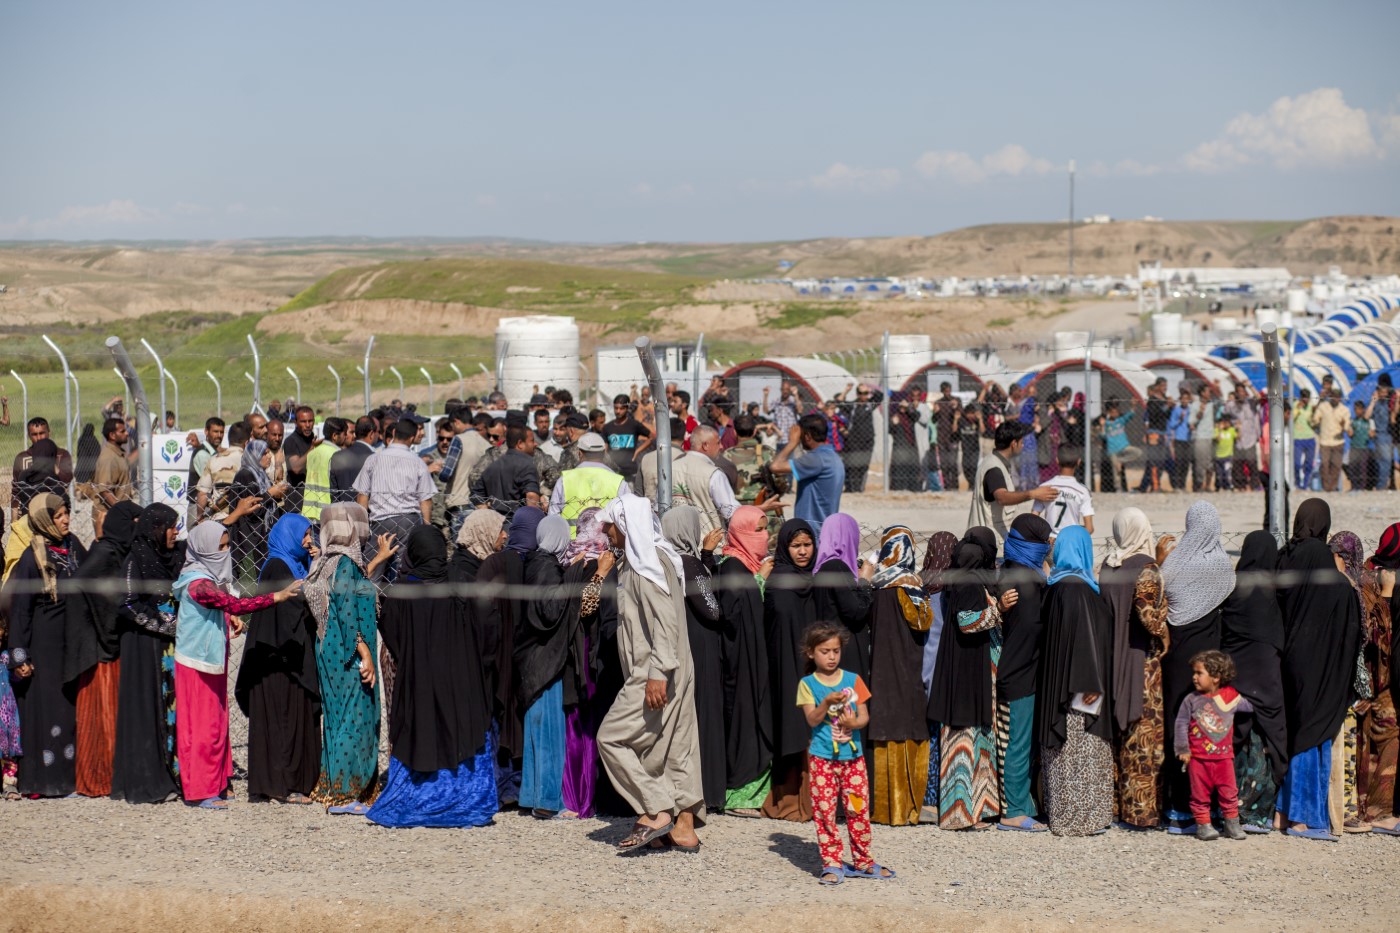 Famílies desplaçades de Mossul fent cua desesperades durant un subministrament de menjar a l'interior del Camp de desplaçats Hassan Sham, Mossul, Kurdistan, Iraq. 17 d’abril de 2017